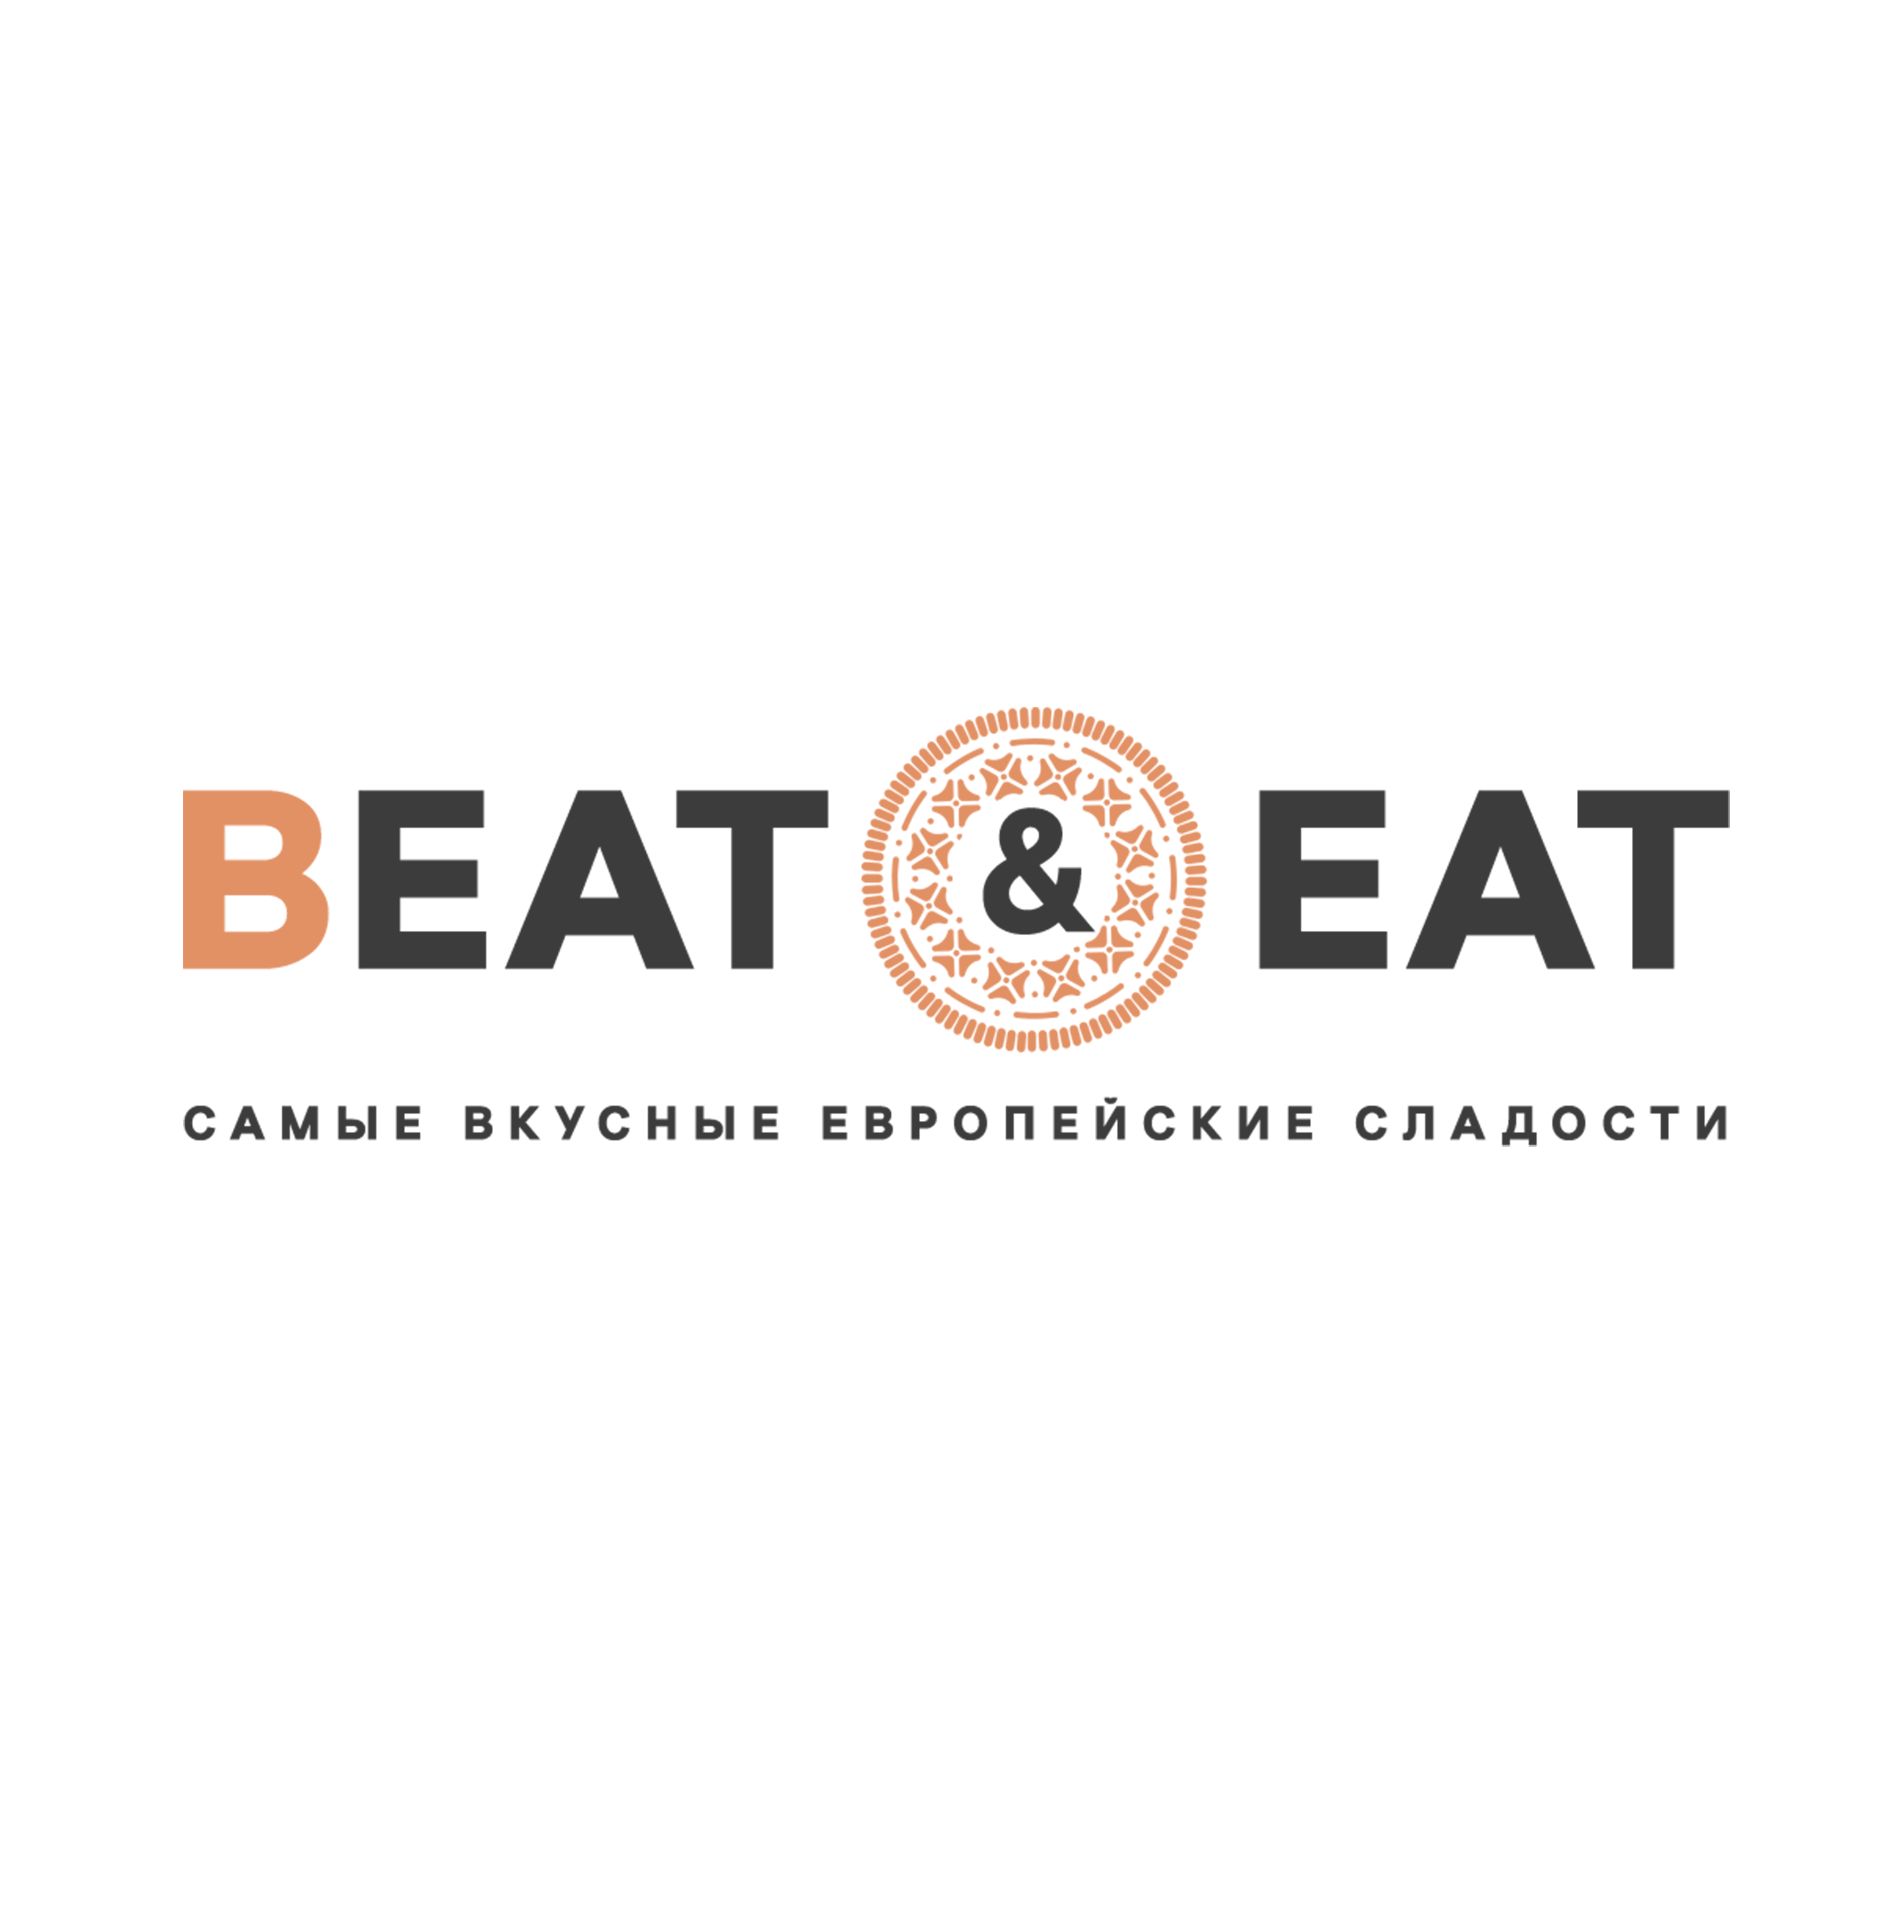 Лого и фирменный стиль для Bite and Eat(Bite&Eat) - дизайнер puppy2015